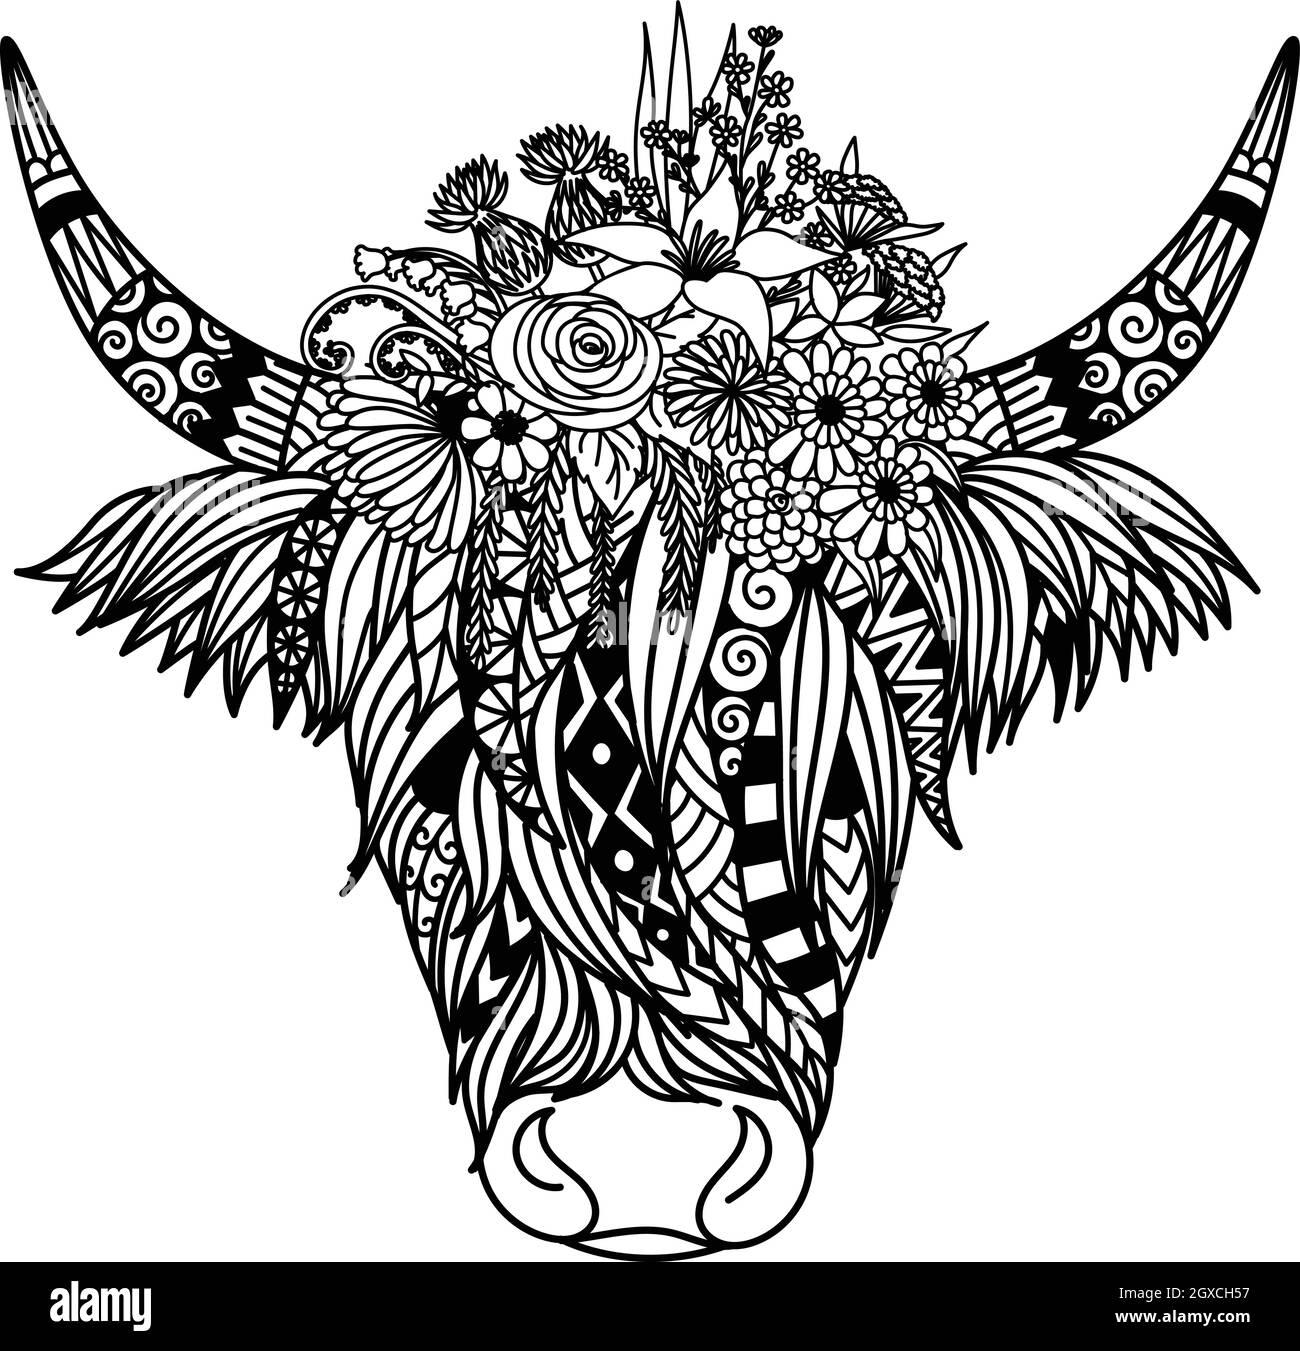 Highland vache avec fleurs design pour livre de coloriage, page de coloriage, t shirt design et ainsi de suite. Illustration vectorielle Illustration de Vecteur